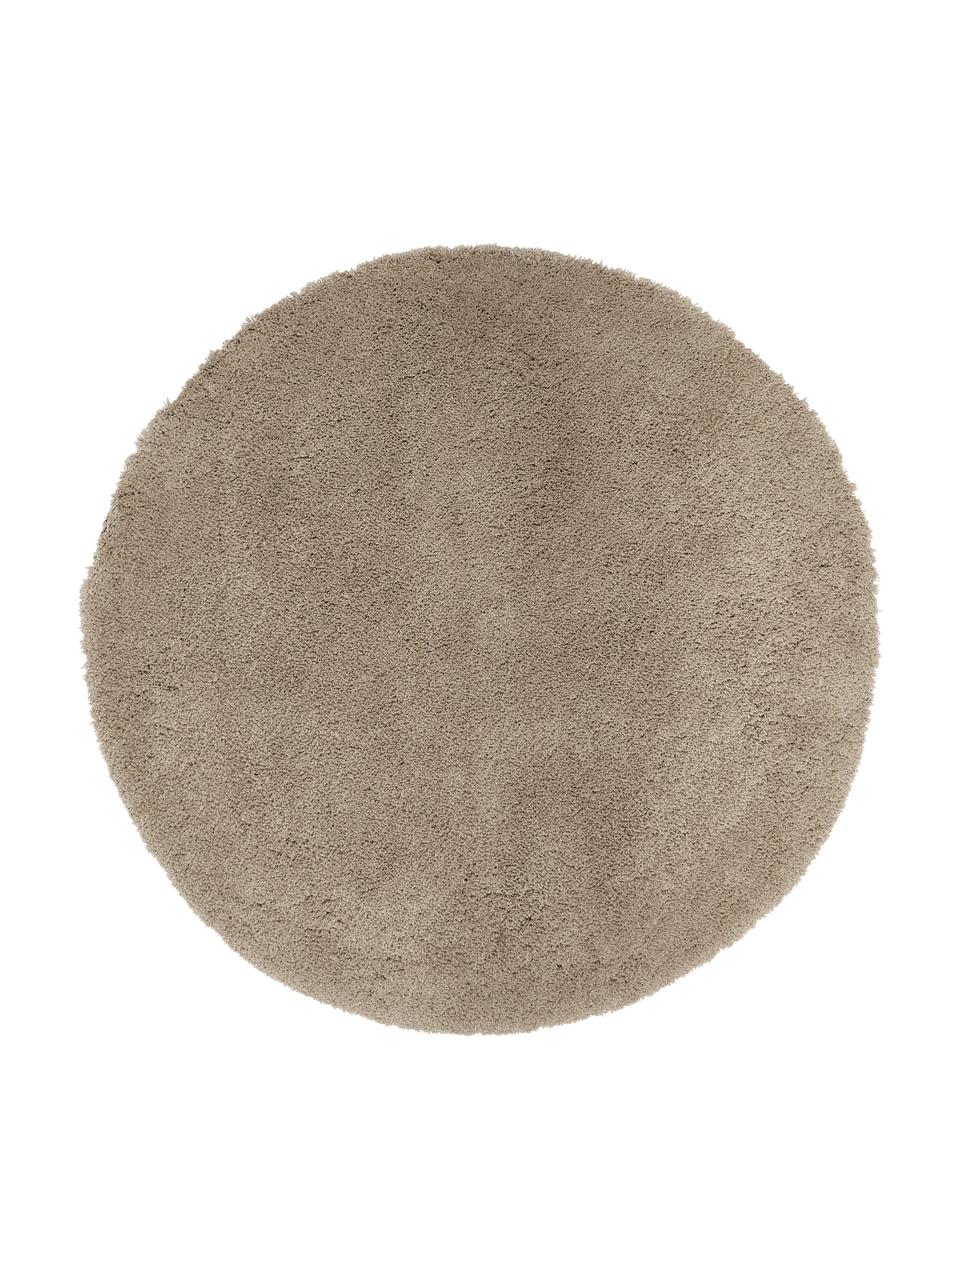 Okrągły puszysty dywan z długim włosiem Leighton, Beżowo-brązowy, Ø 150 cm (Rozmiar M)